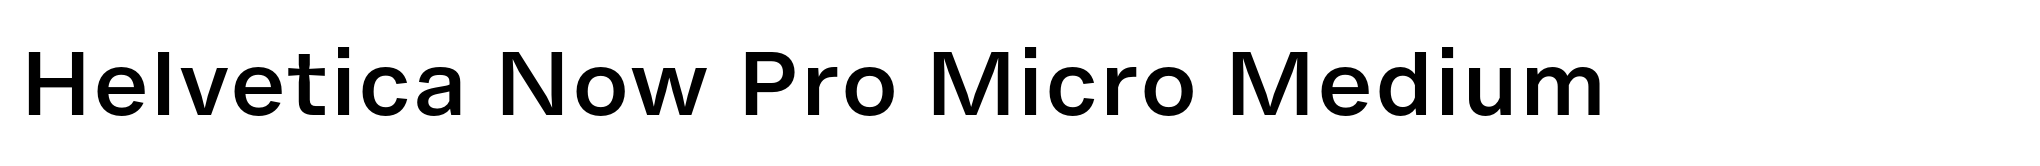 Helvetica Now Pro Micro Medium image